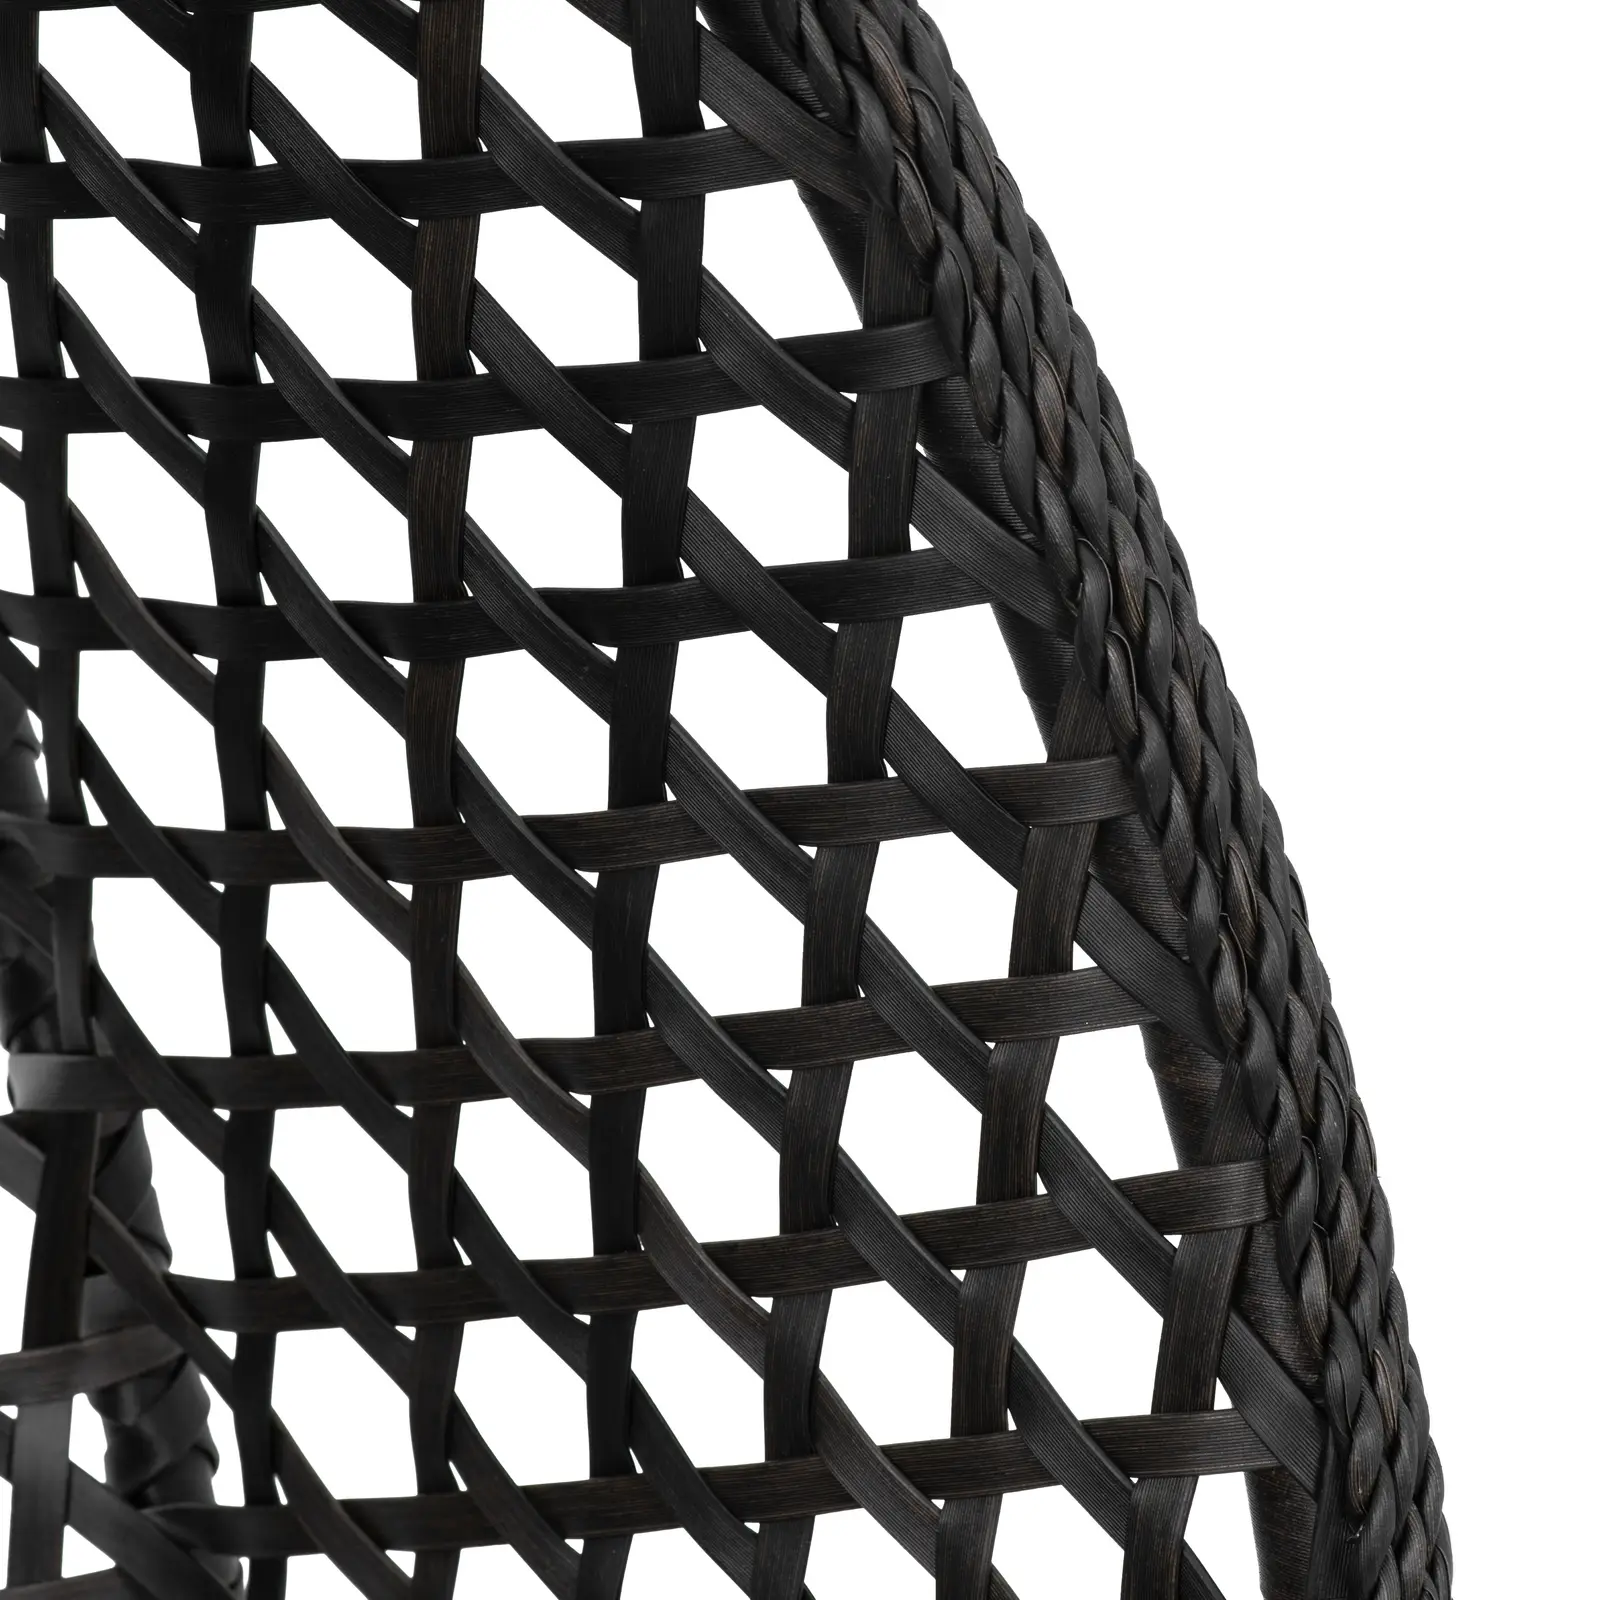 Venkovní závěsné křeslo s rámem - skládací sedák - černá/šedá - tvar slzy